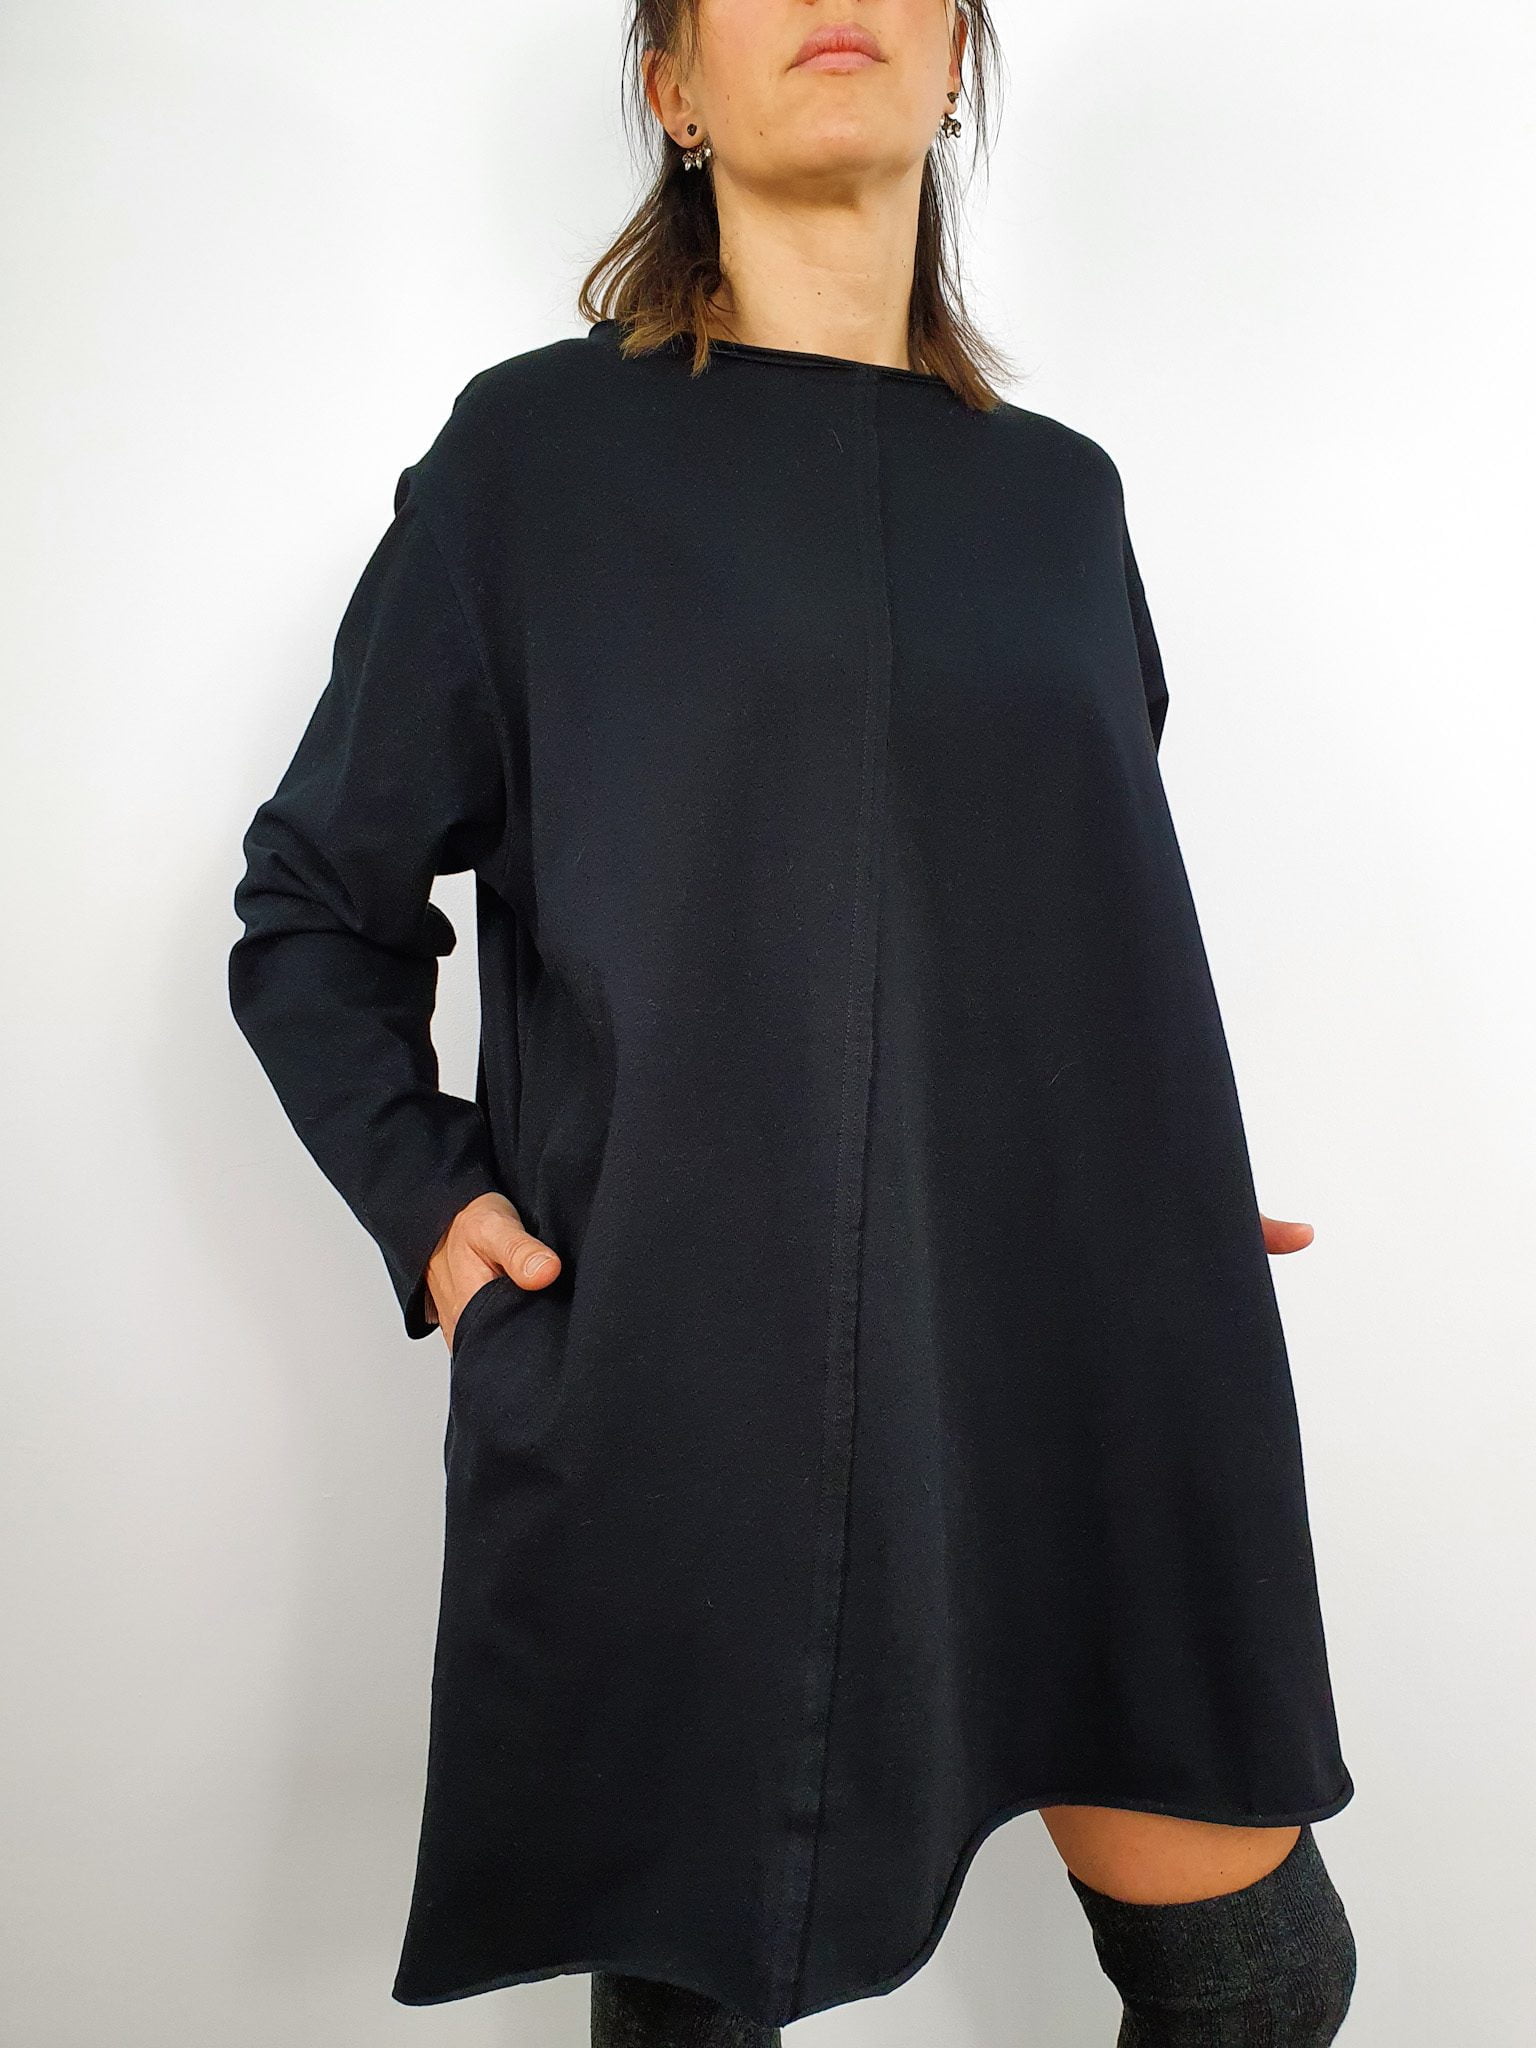 Moda Autorska Slow Fashion BezAle - bezale tunika prosciutto